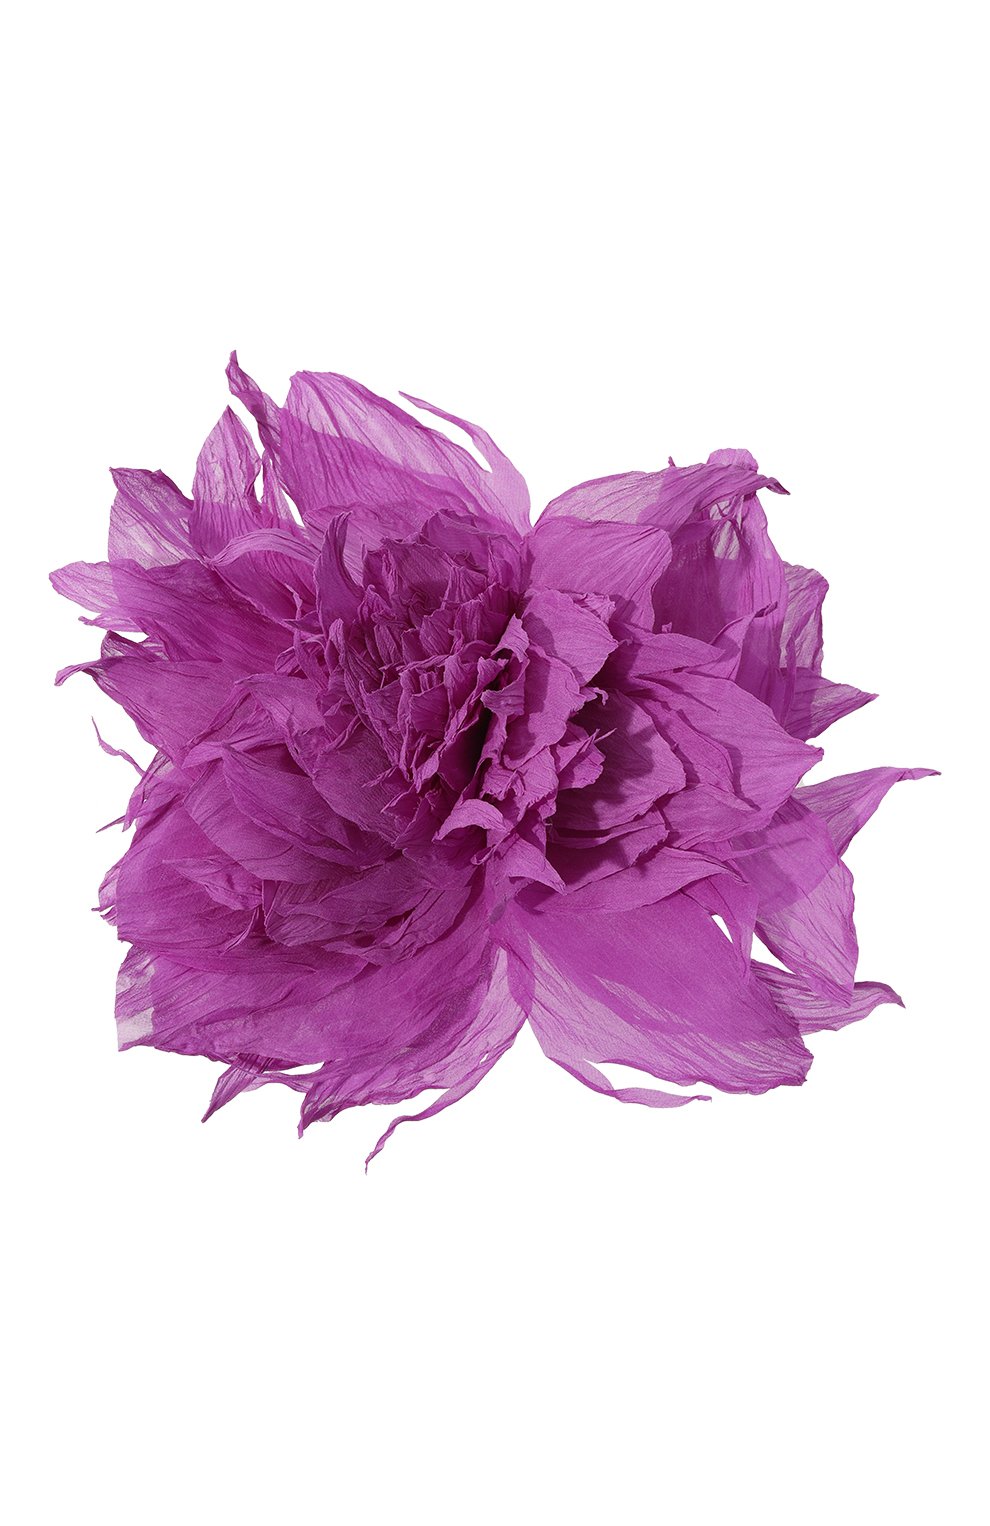 Броши Flower Me, Брошь Flower Me, Россия, Фиолетовый, Текстиль: 100%;, 13376740  - купить